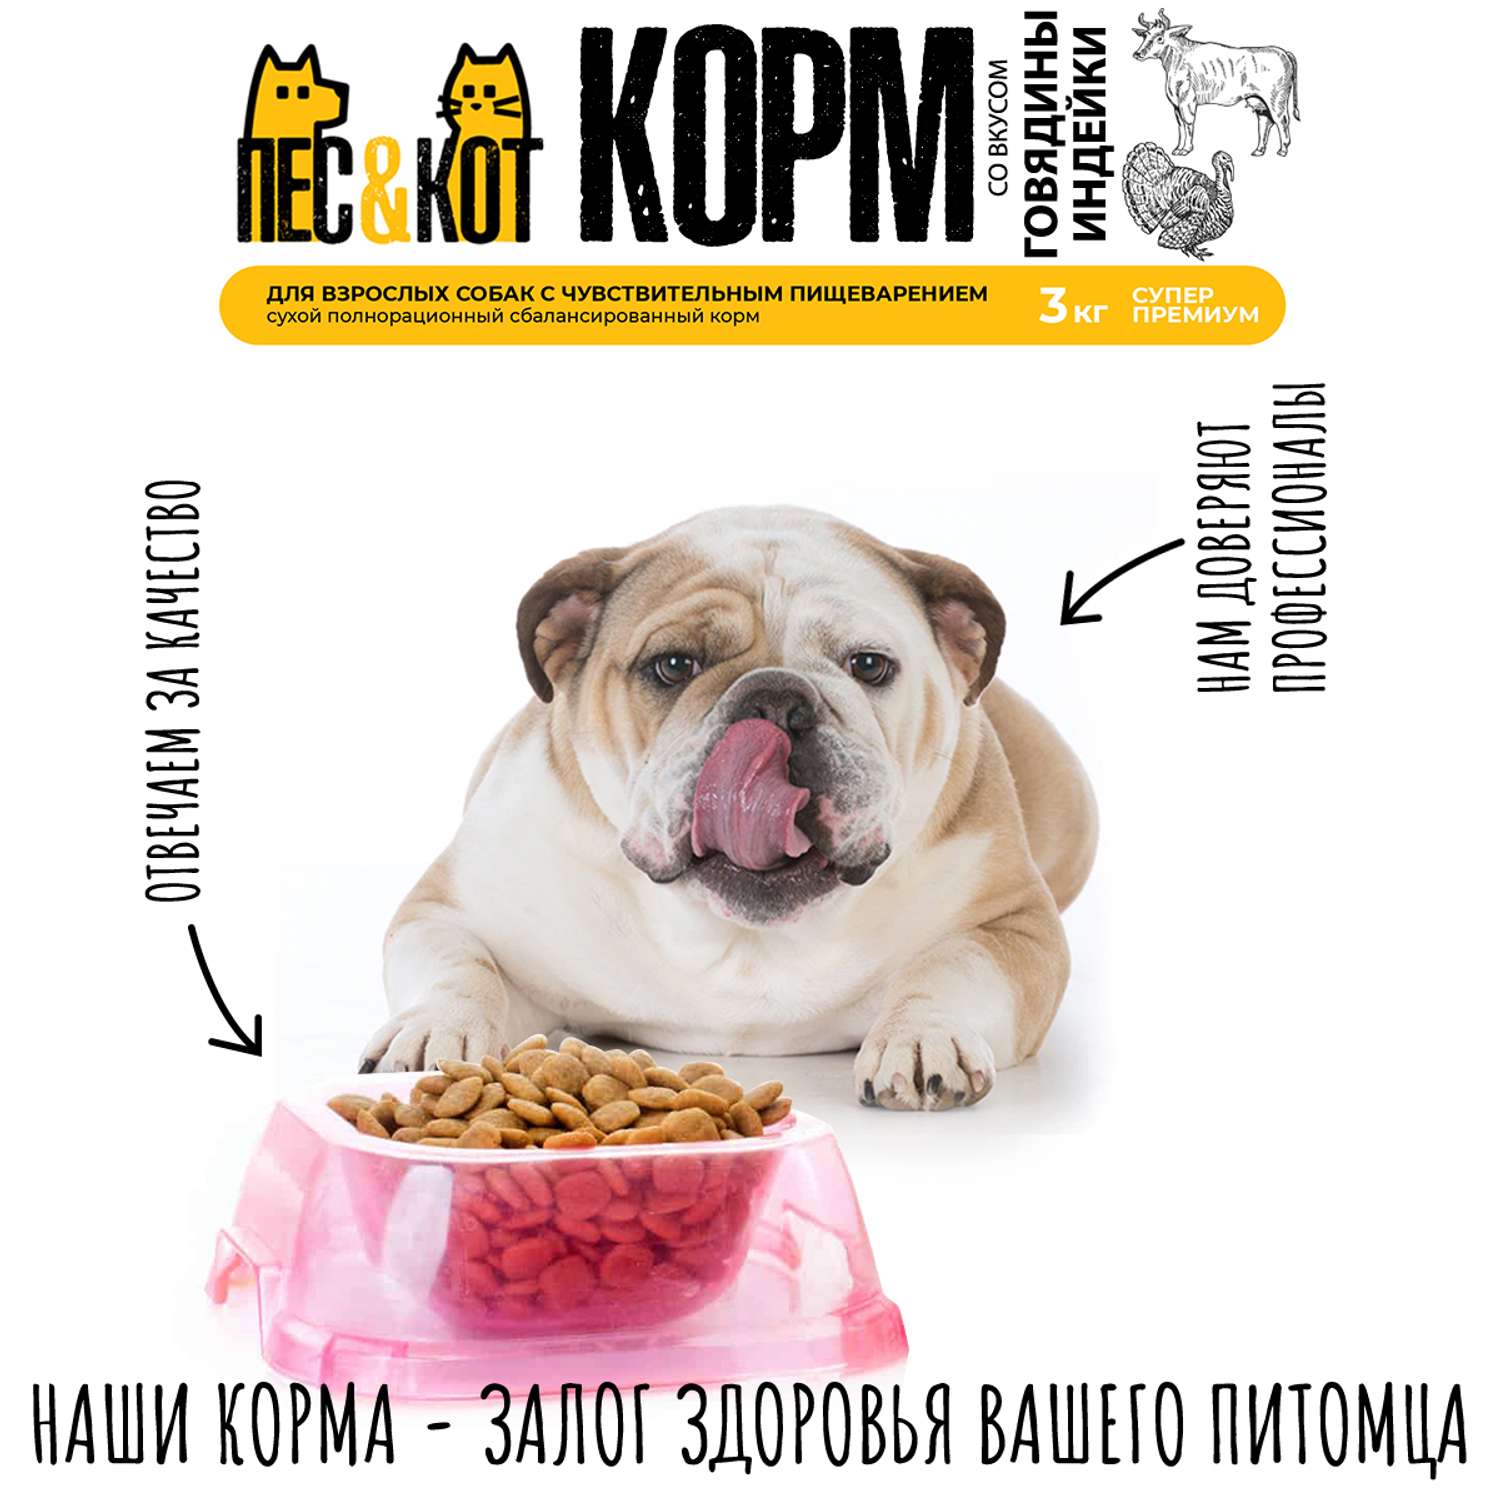 Корм сухой ПЕС и КОТ Индейка 3 кг Суперпремиум для взрослых собак с чувствительным пищеварением - фото 4